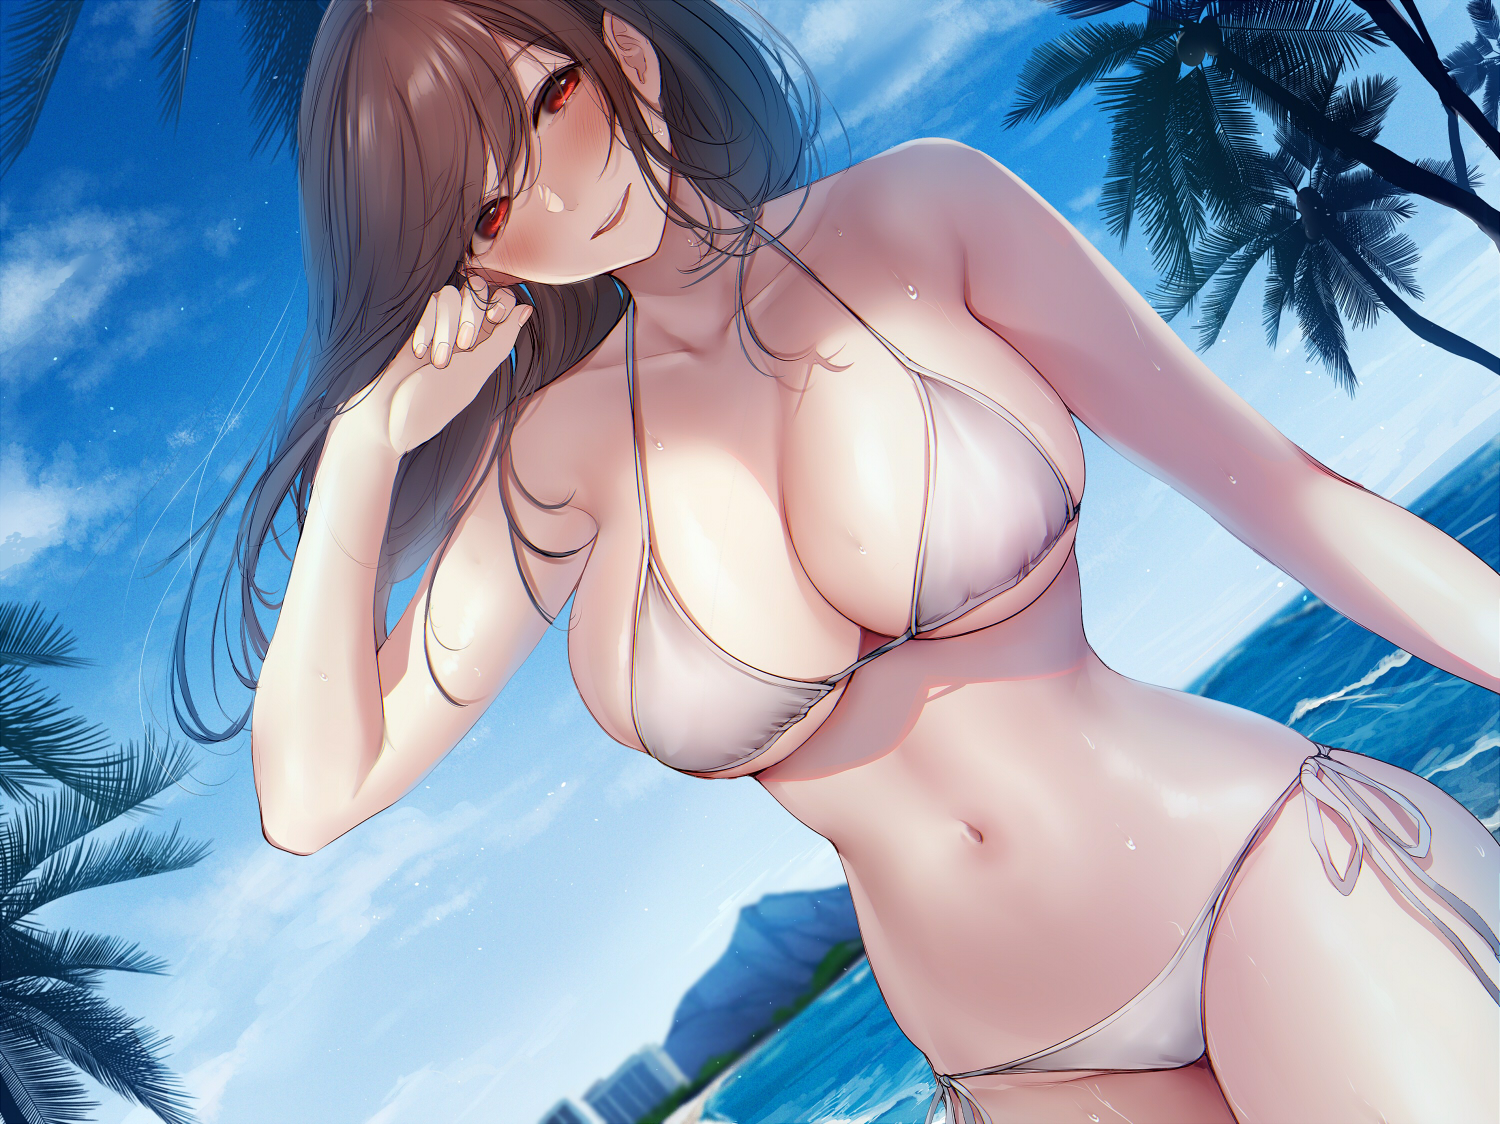 Big boob anime bikini girl in the water